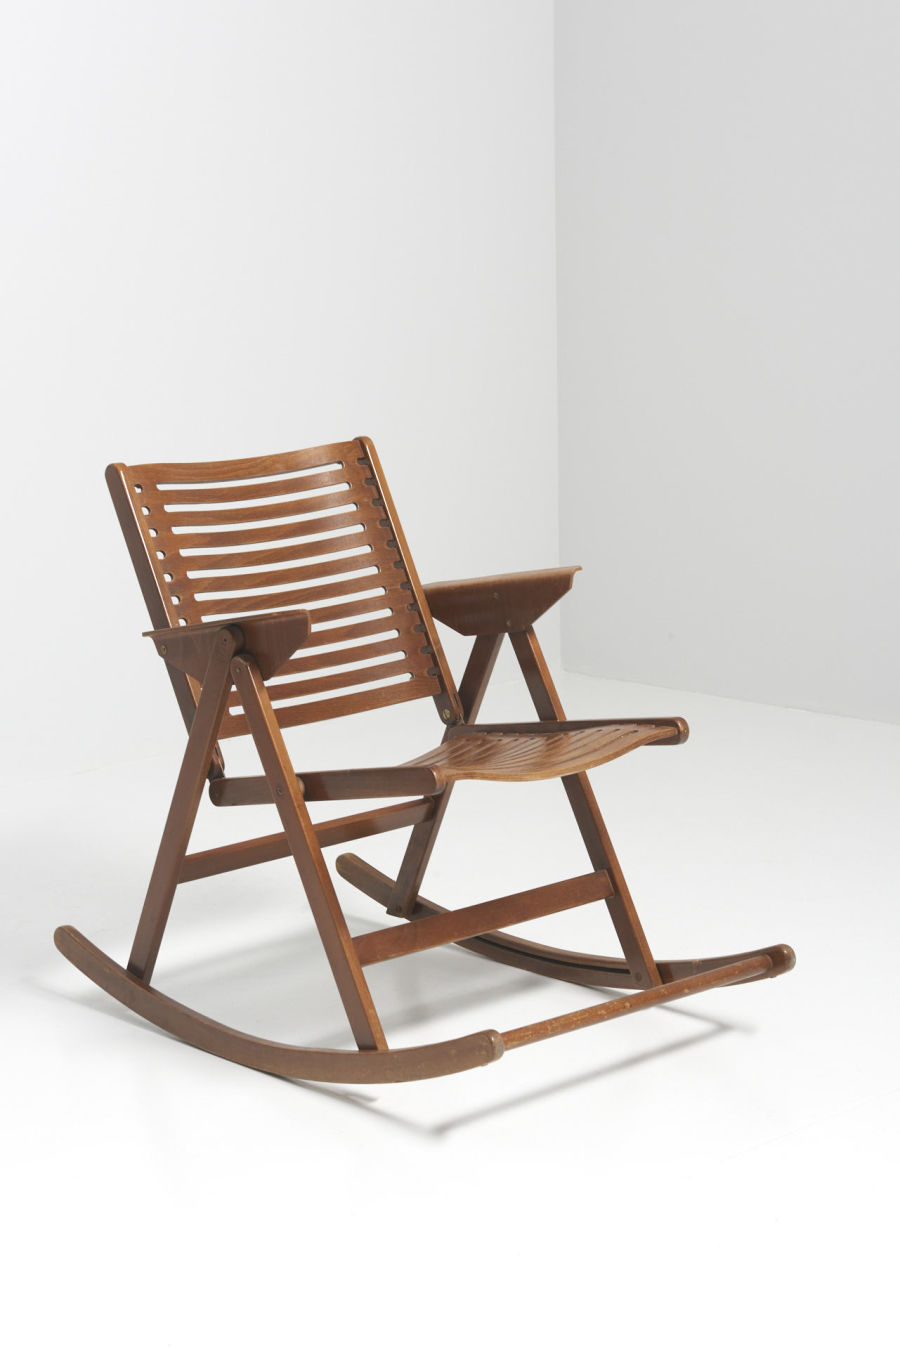 modestfurniture-vintage-2945-rocking-folding-chair-niko-kralj-stol-kamnik01